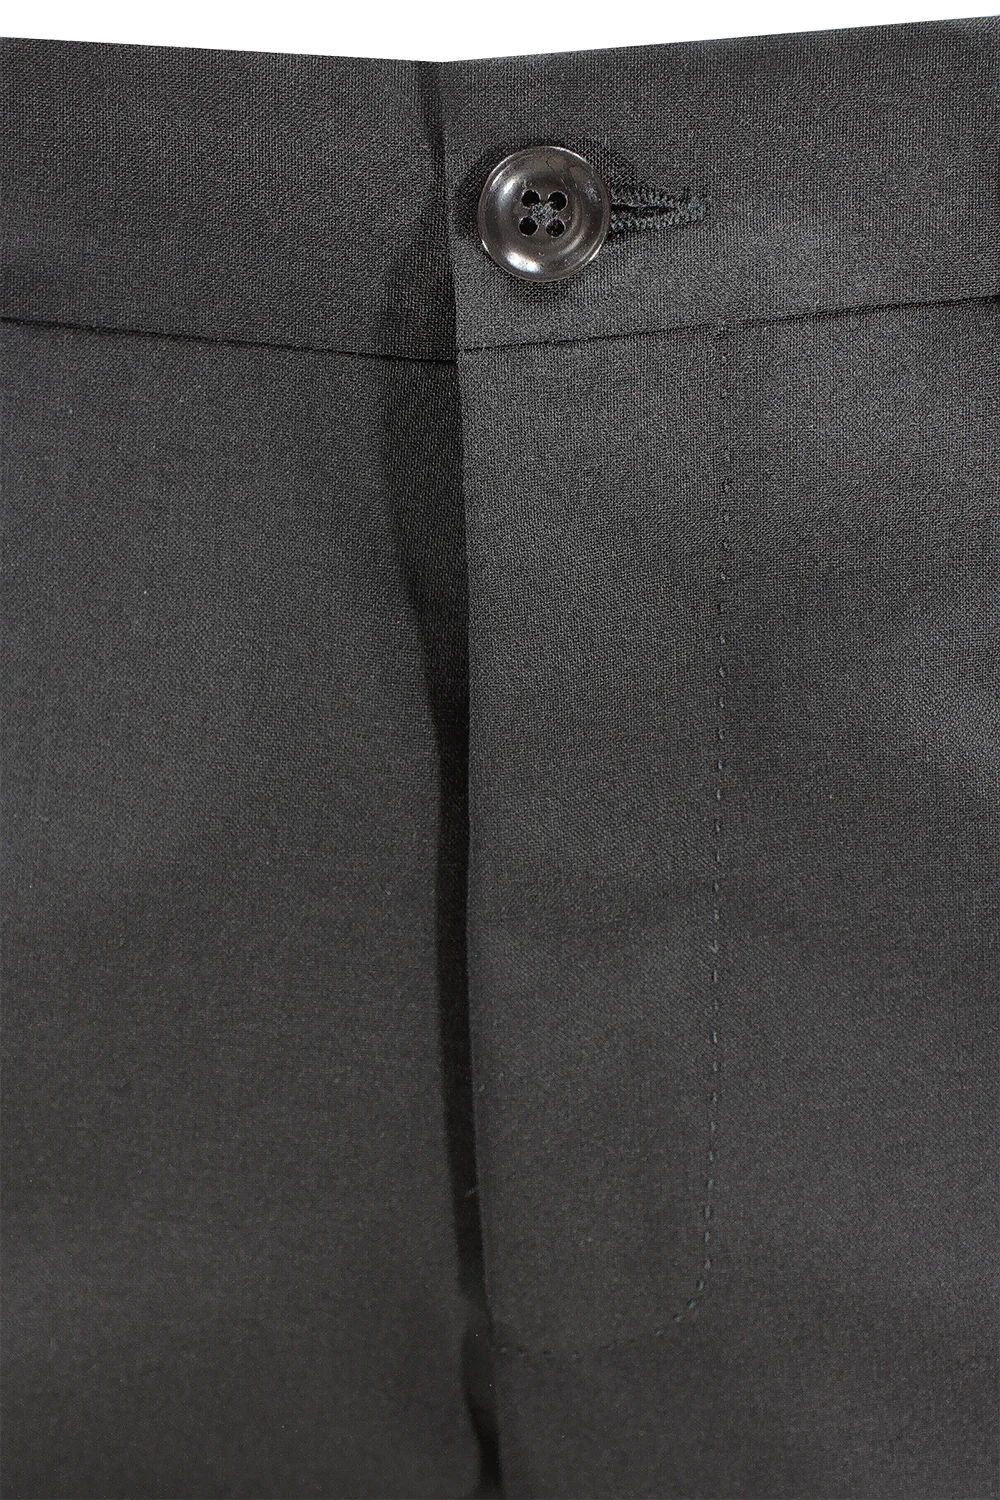 Pantalone Japan in tela di lana nero bottone